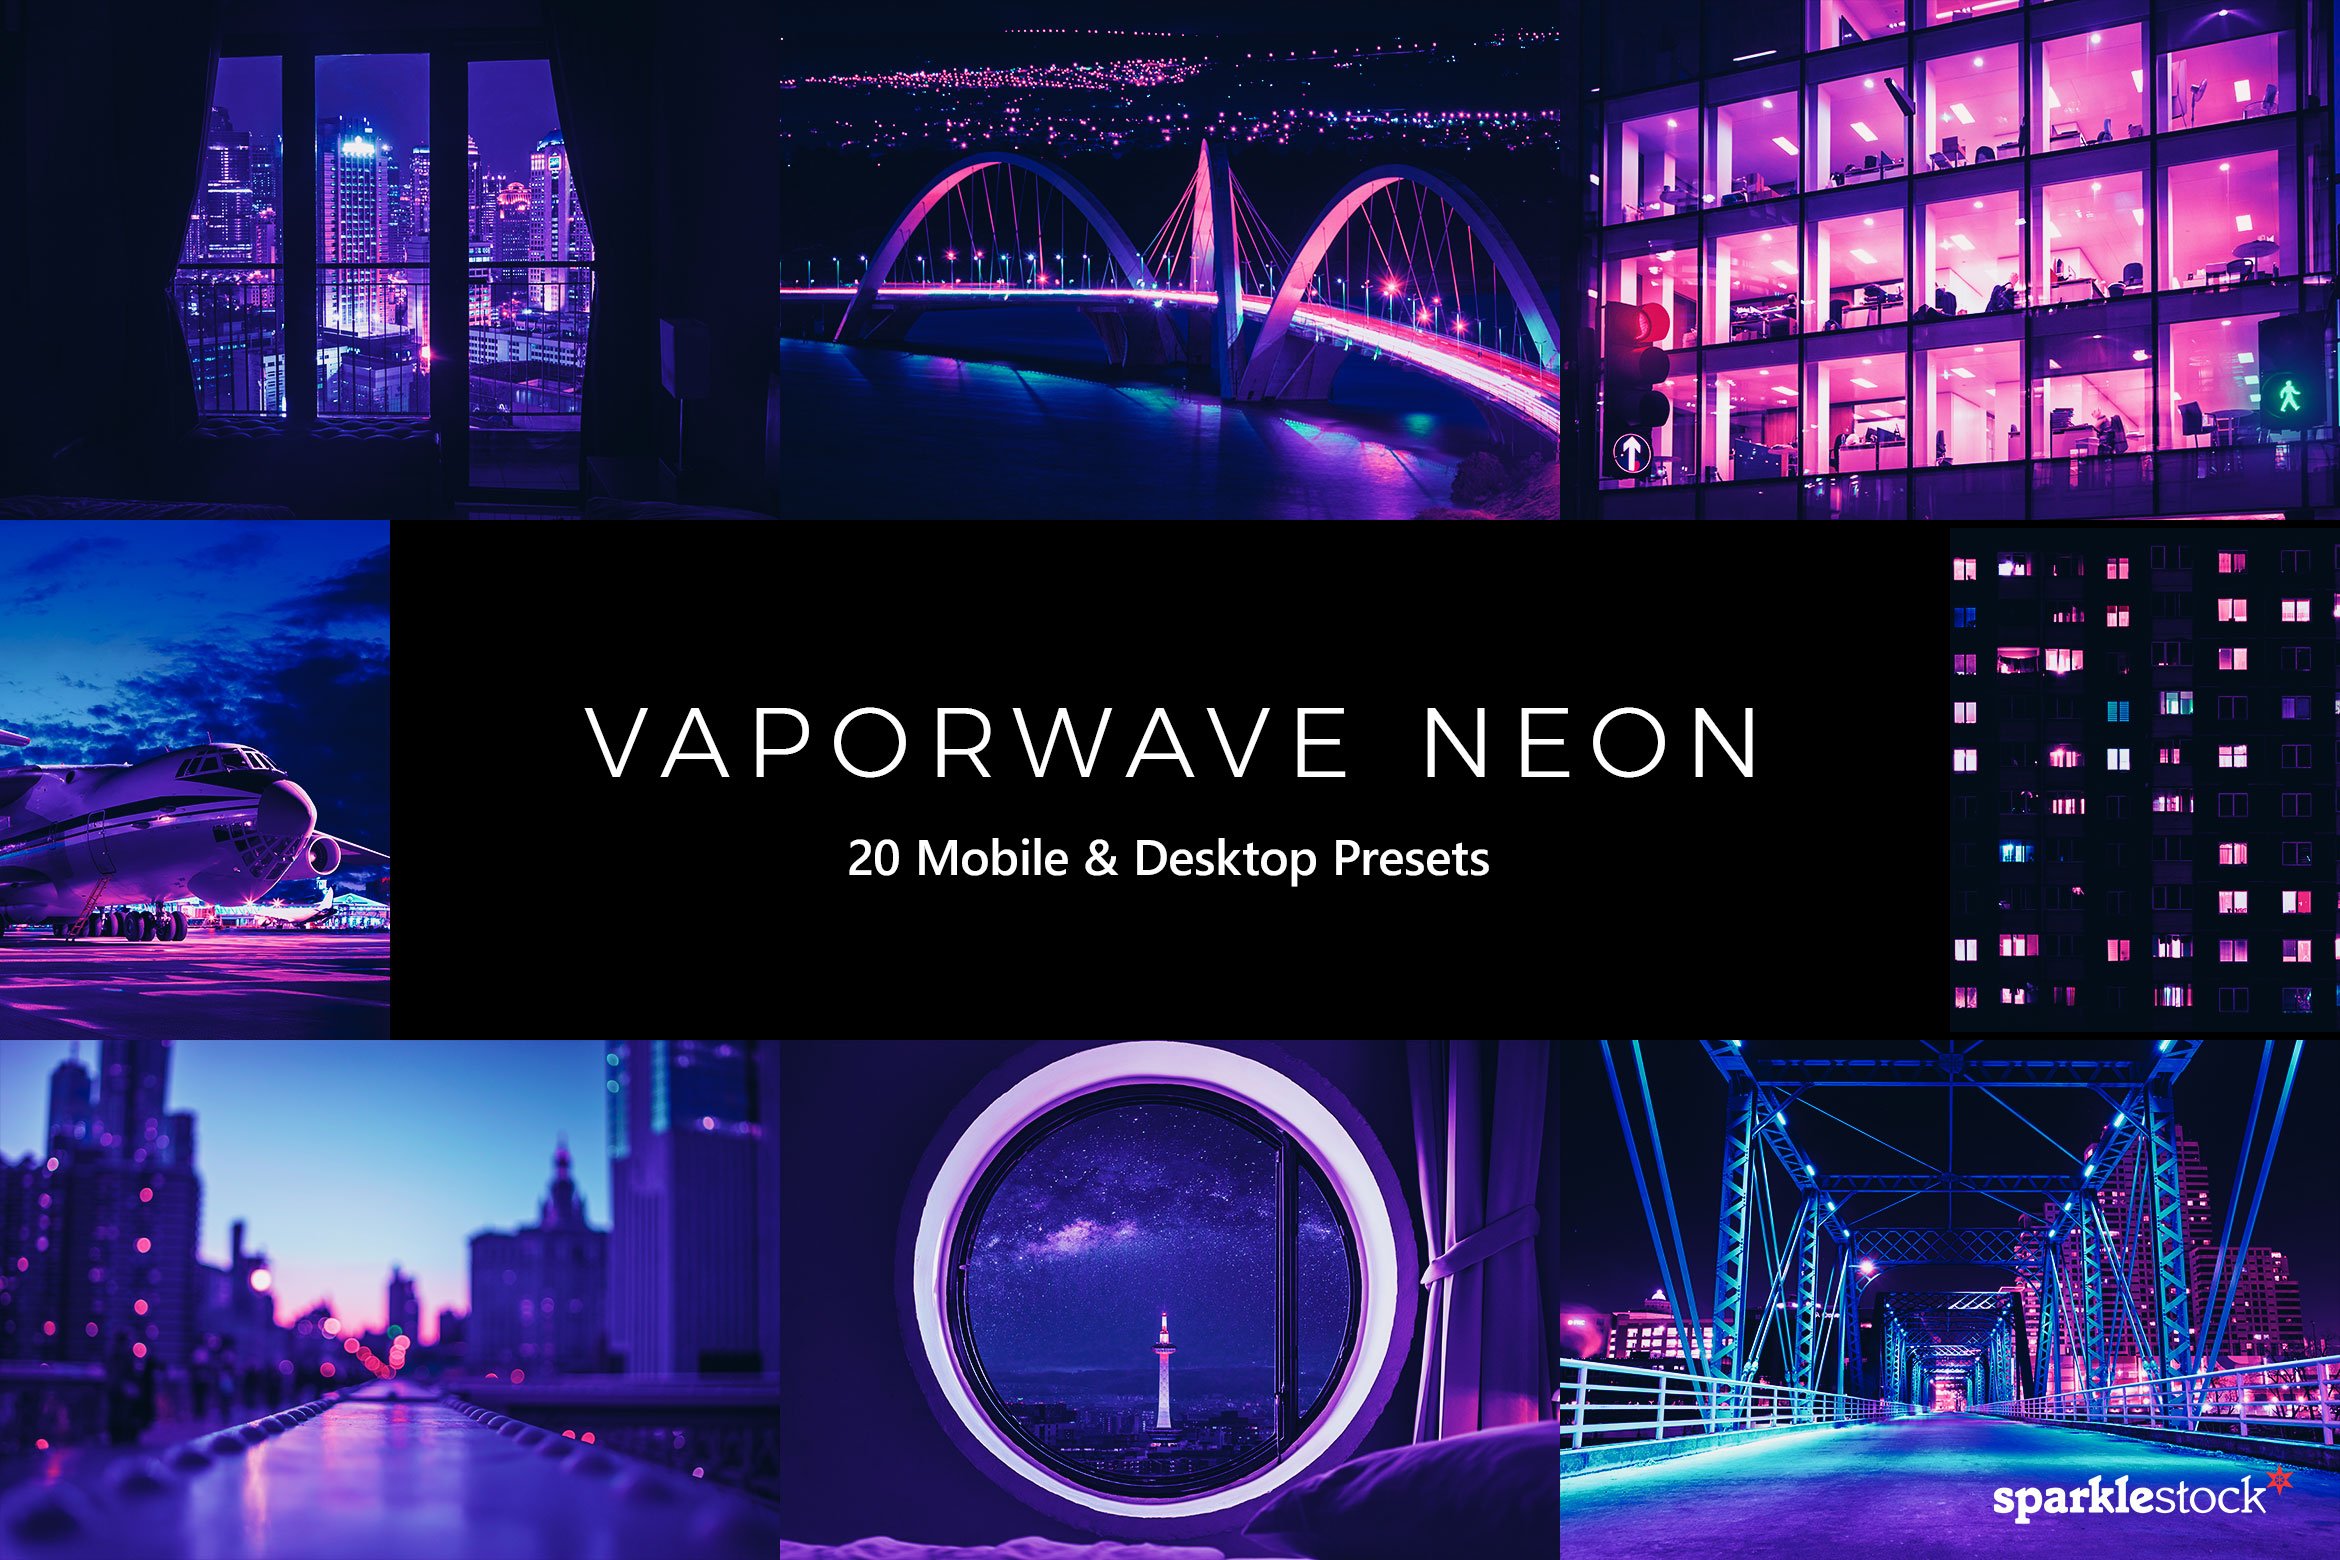 20  Vaporwave Neon LR Presetscover image.